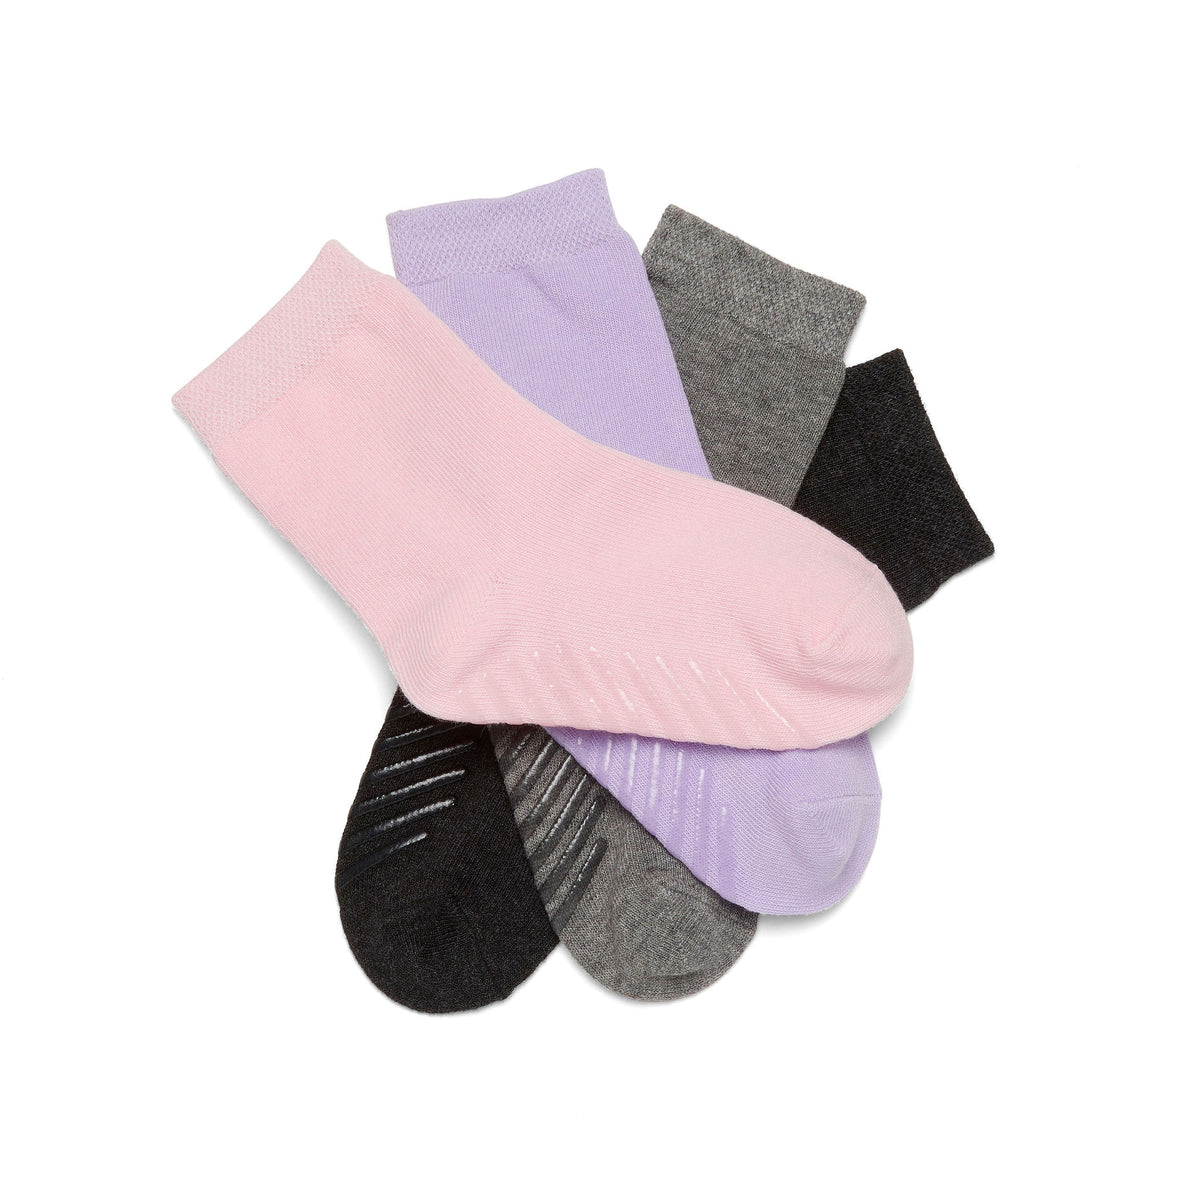 Pink/Purple/Grey Grip Socks for Toddlers &amp; Kids - 4 pairs - Gripjoy Socks